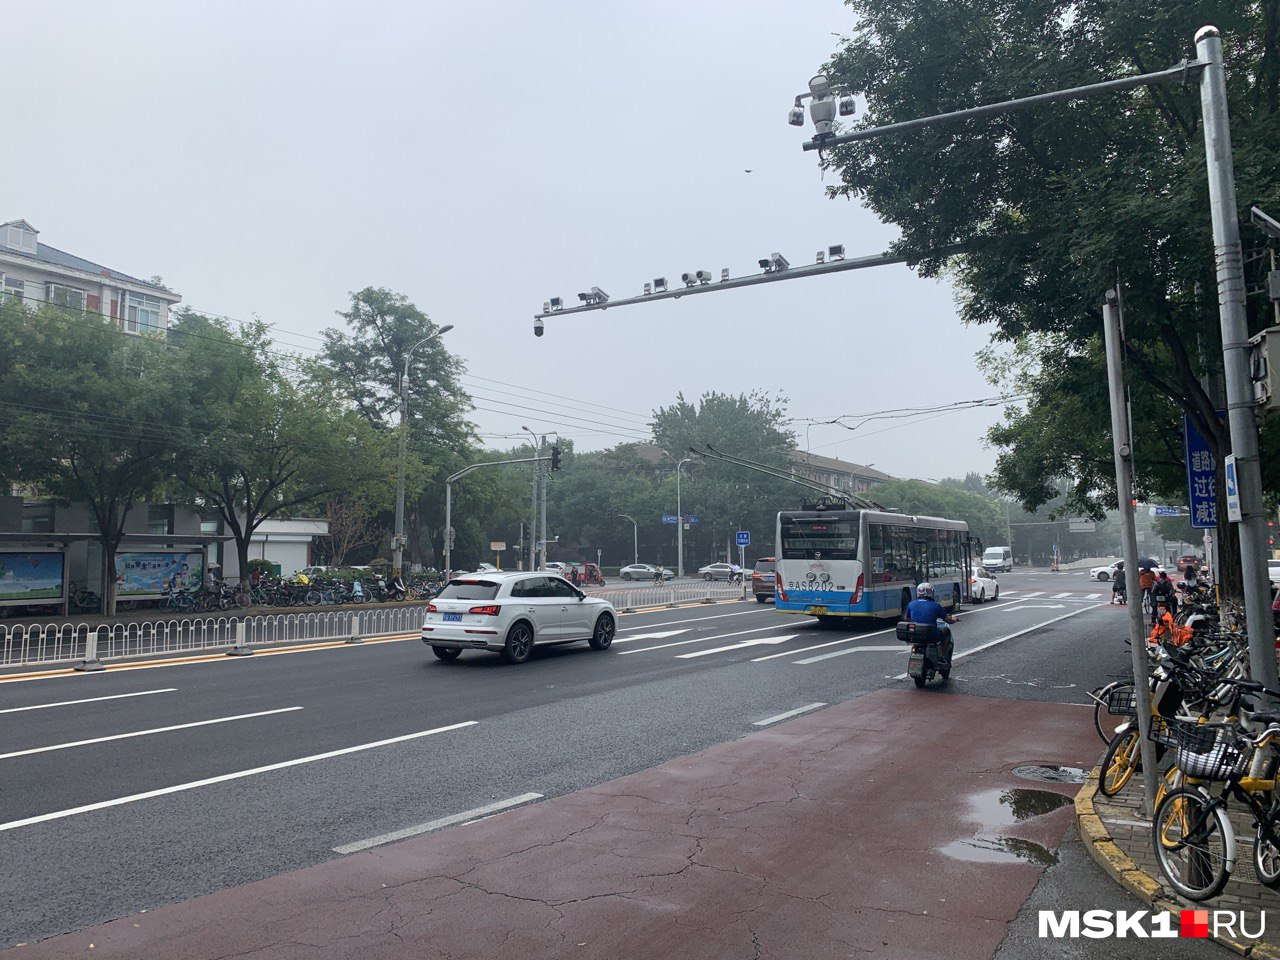 Камеры над дорогой в Пекине